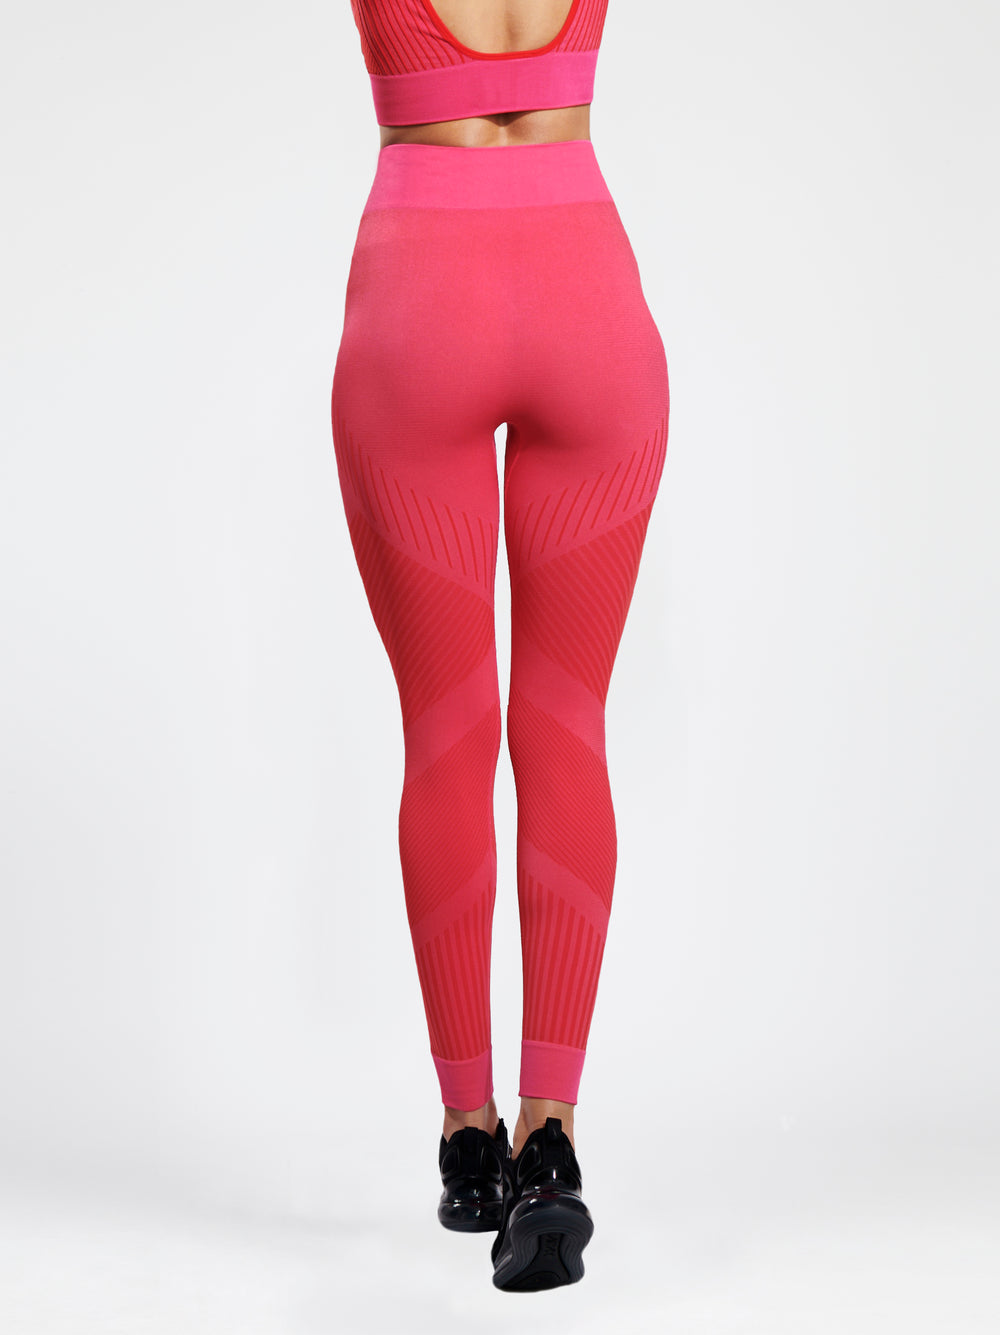 high waist flow legging in poppy pink